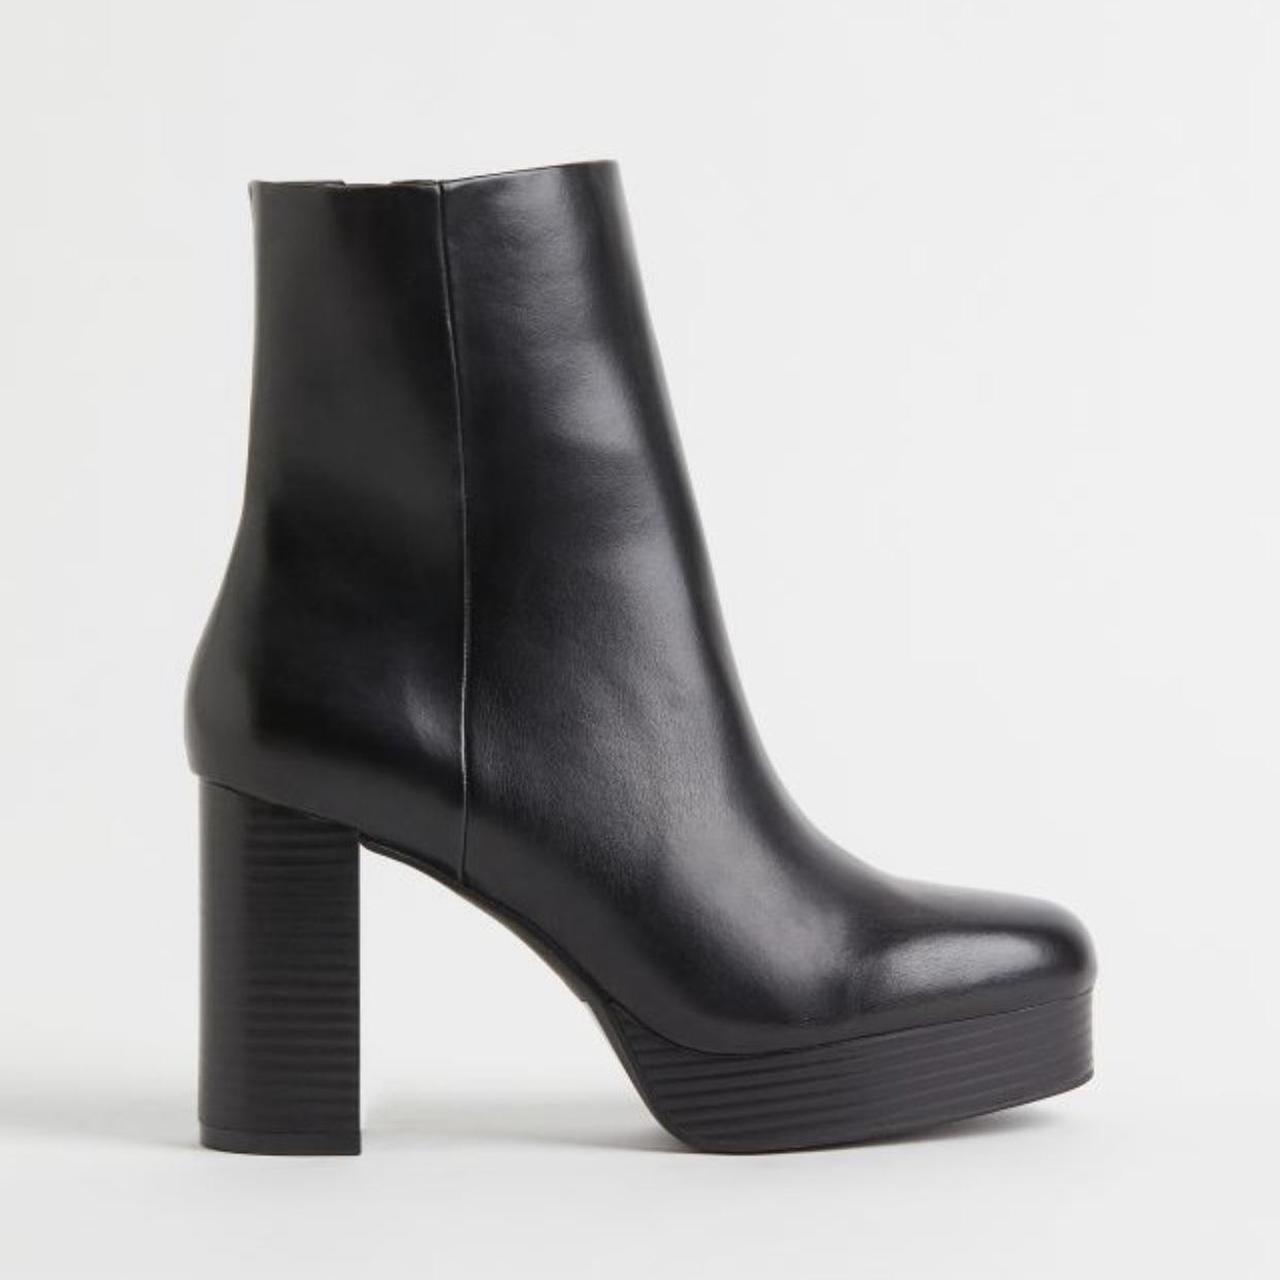 H&M Women's Boots | Depop